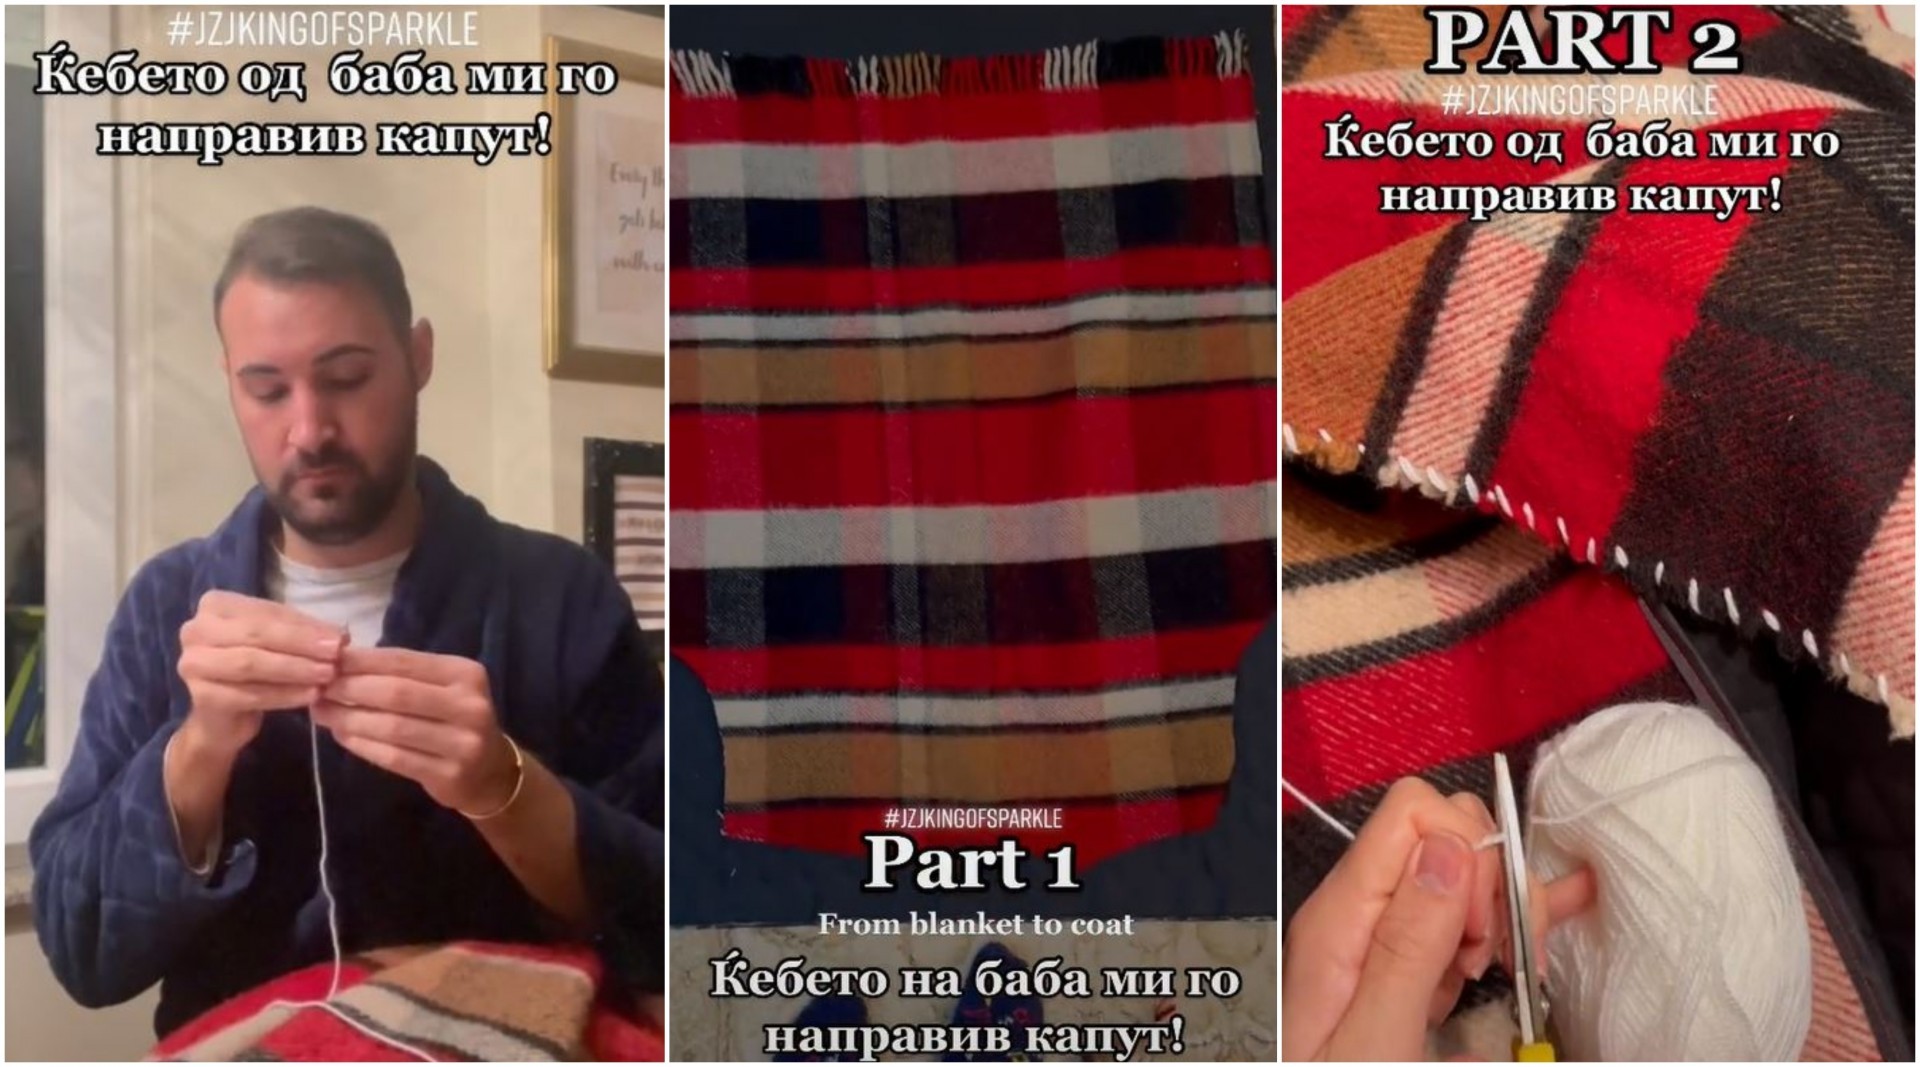 Македонскиот дизајнер Златко Џеј Зи Џеј си направи капут од ќебето на баба му: Лесно, едноставно и модерно